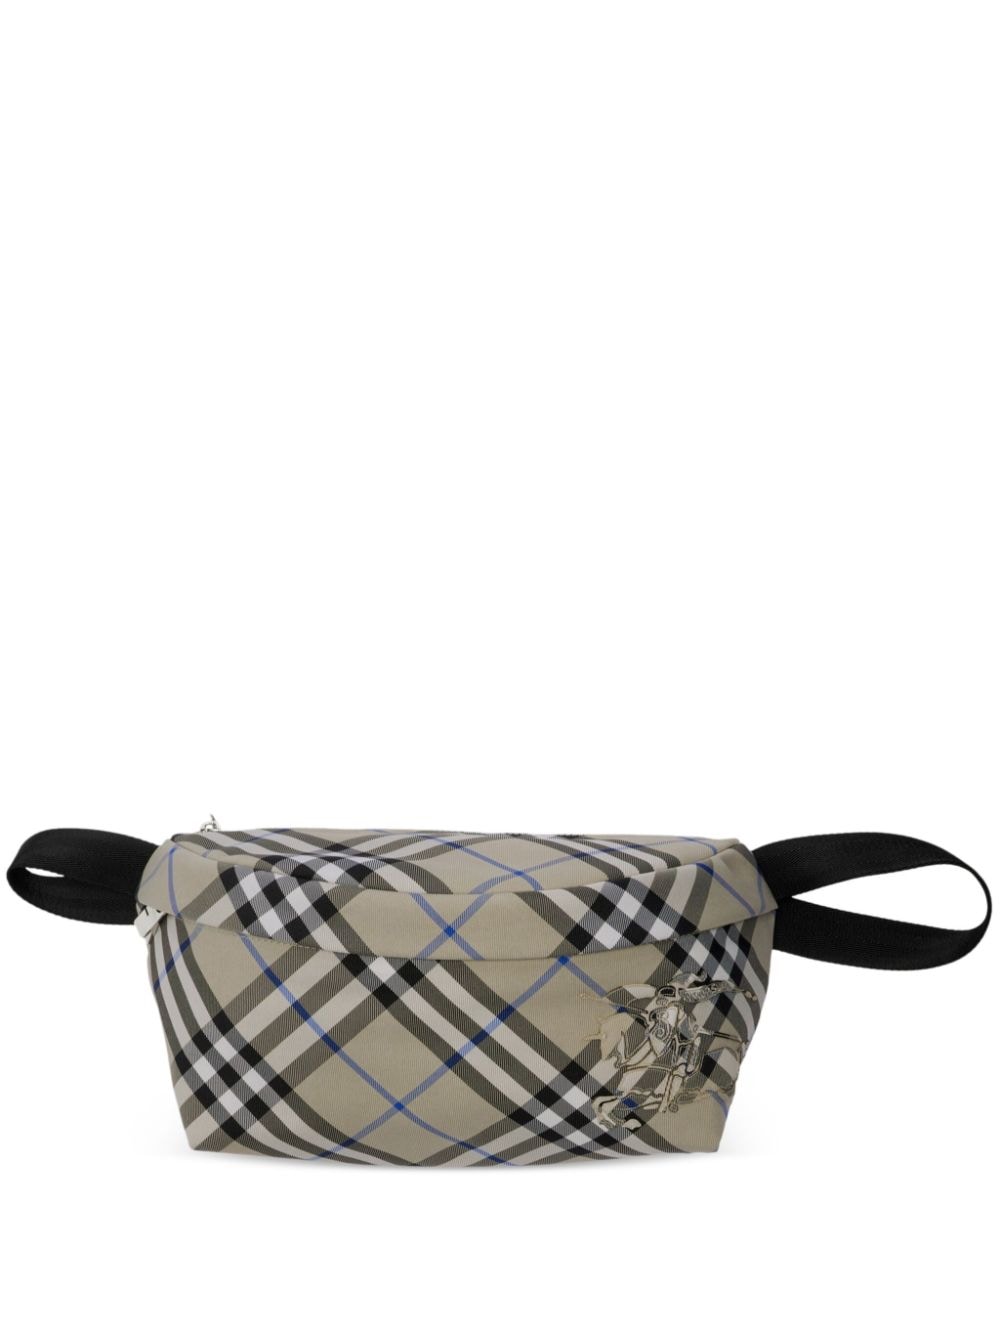 Burberry Vintage Check belt bag - Toni neutri